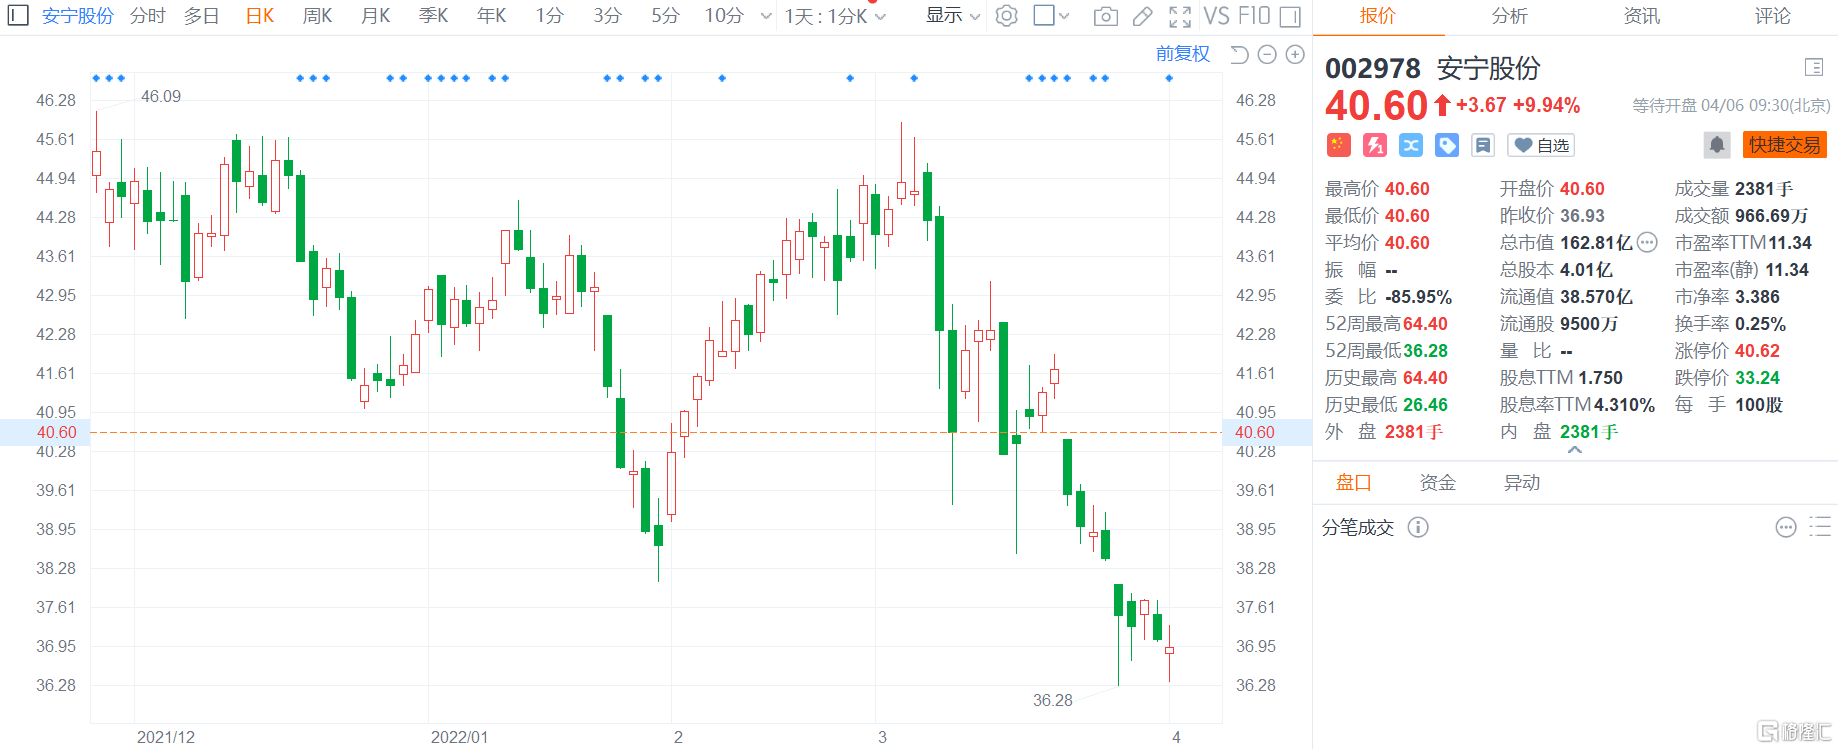 安宁股份开盘涨停 报40.6元创近半个月新高